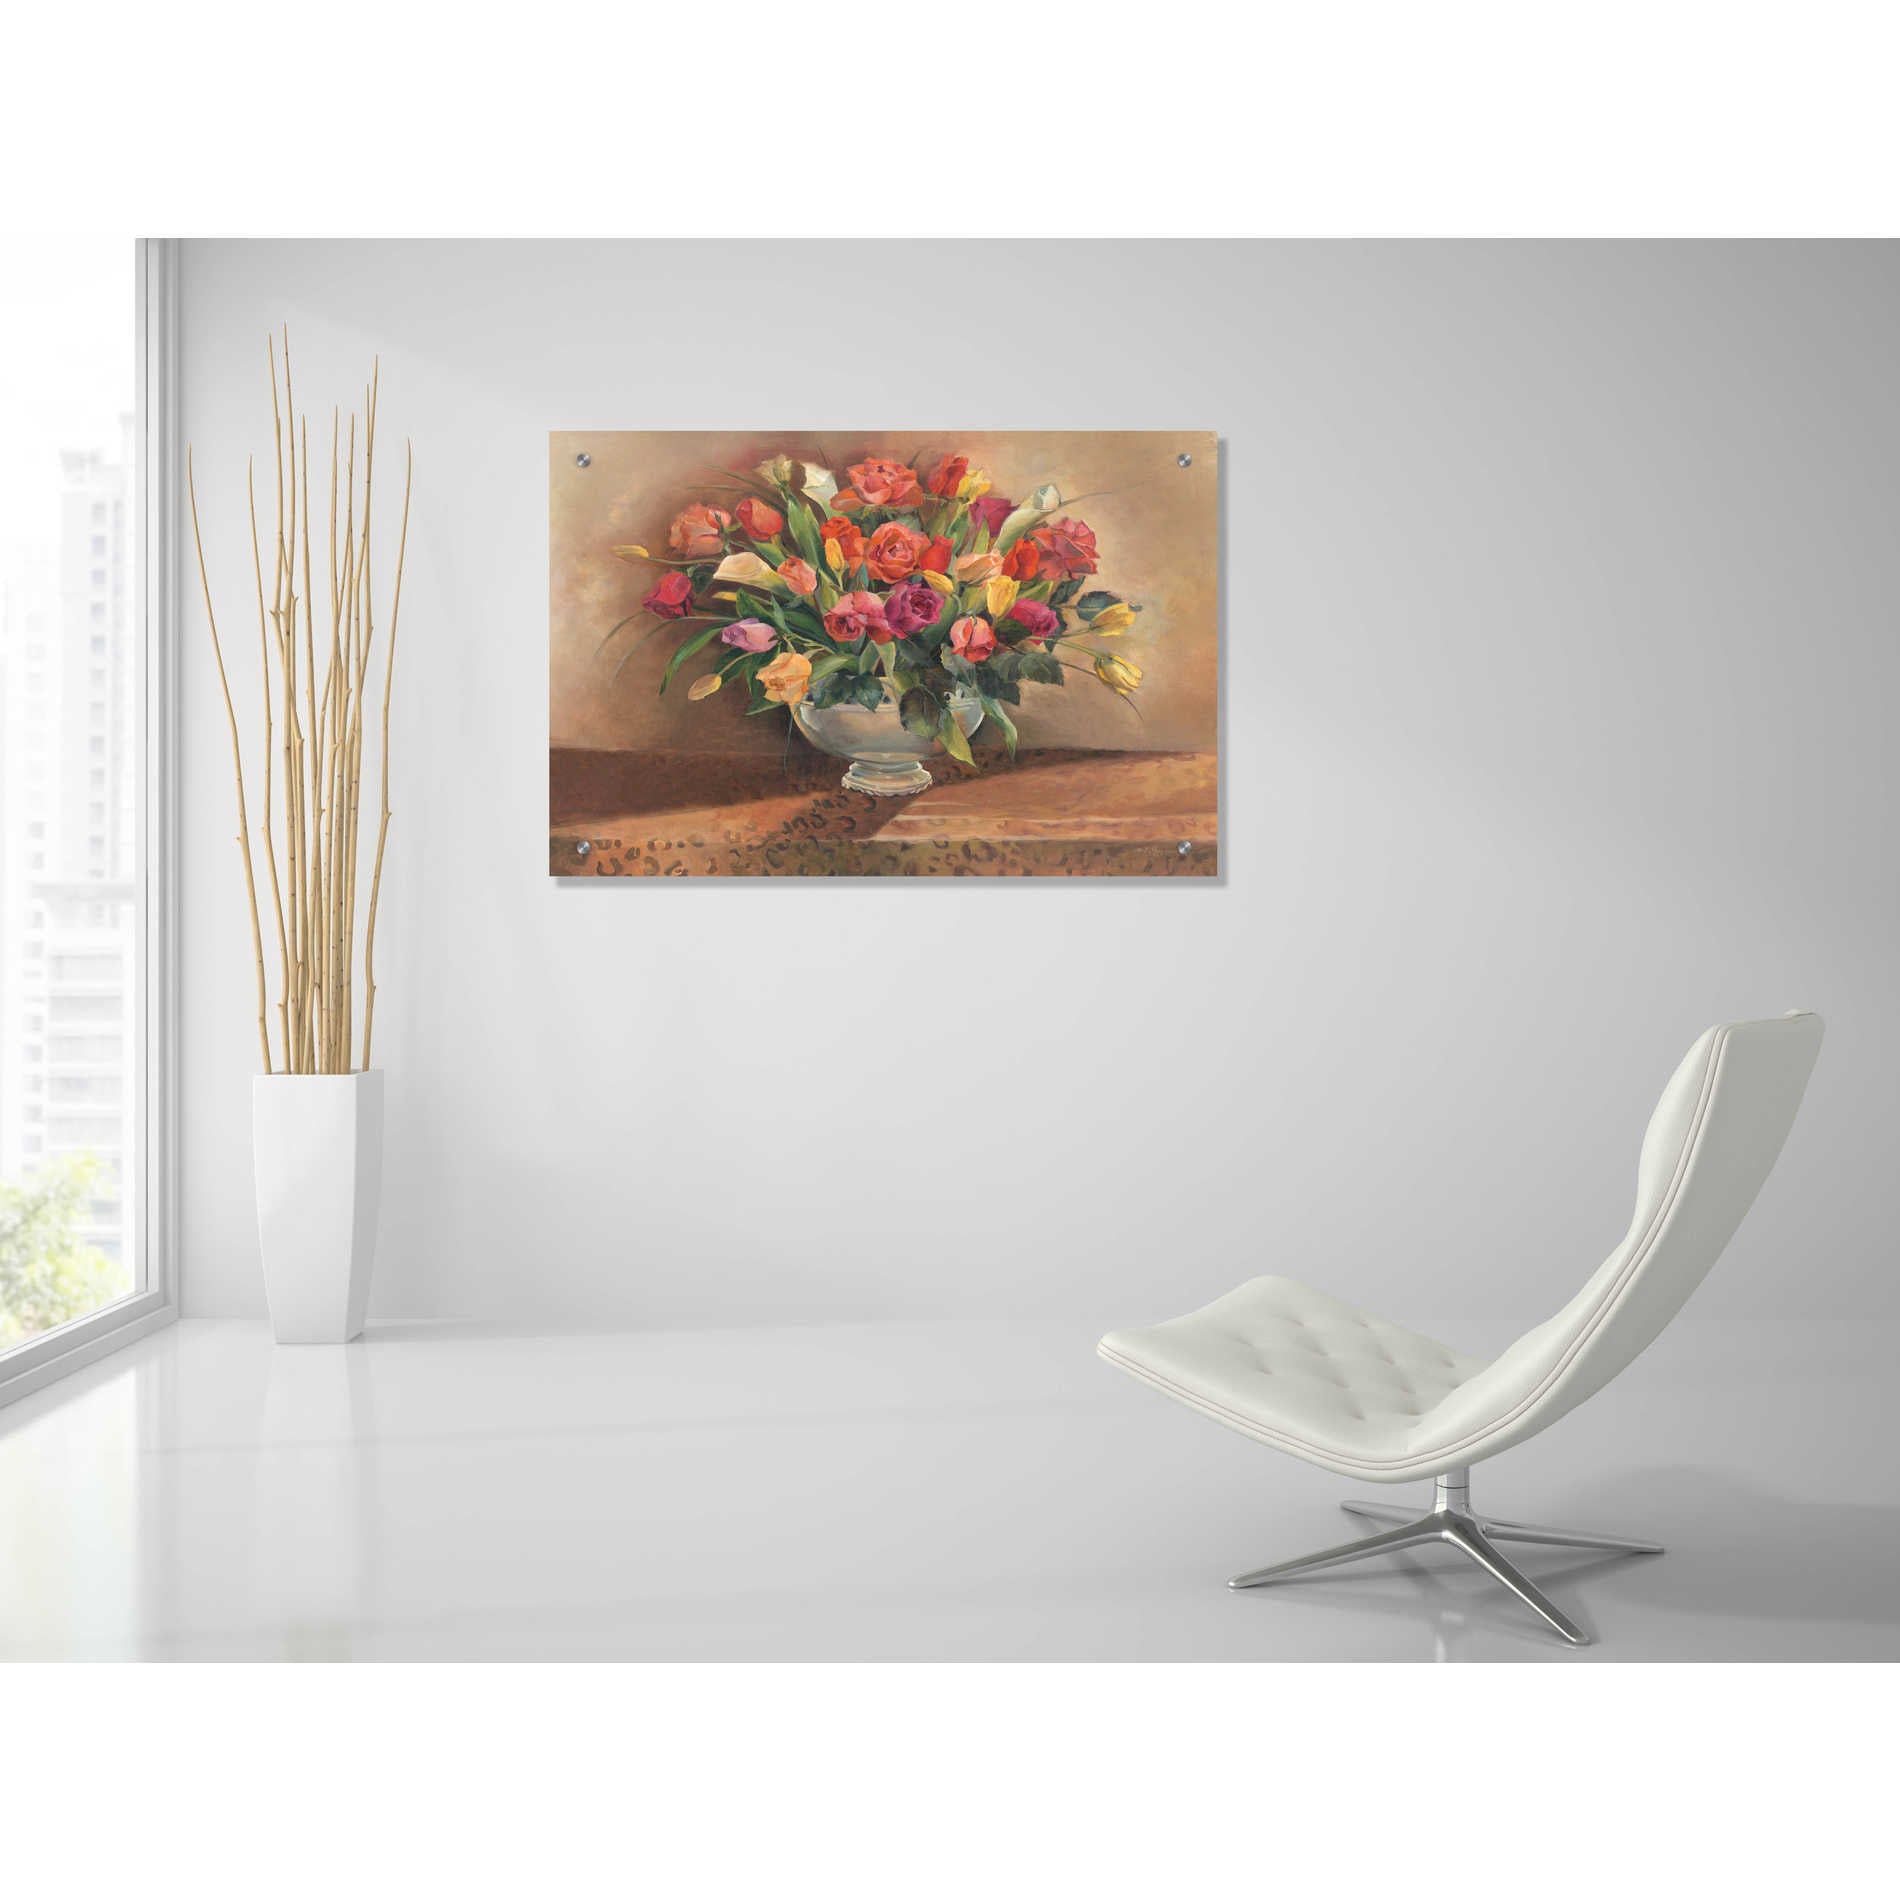 Epic Art 'Spring Floral' by Marilyn Hageman, Acrylic Glass Wall Art,36x24